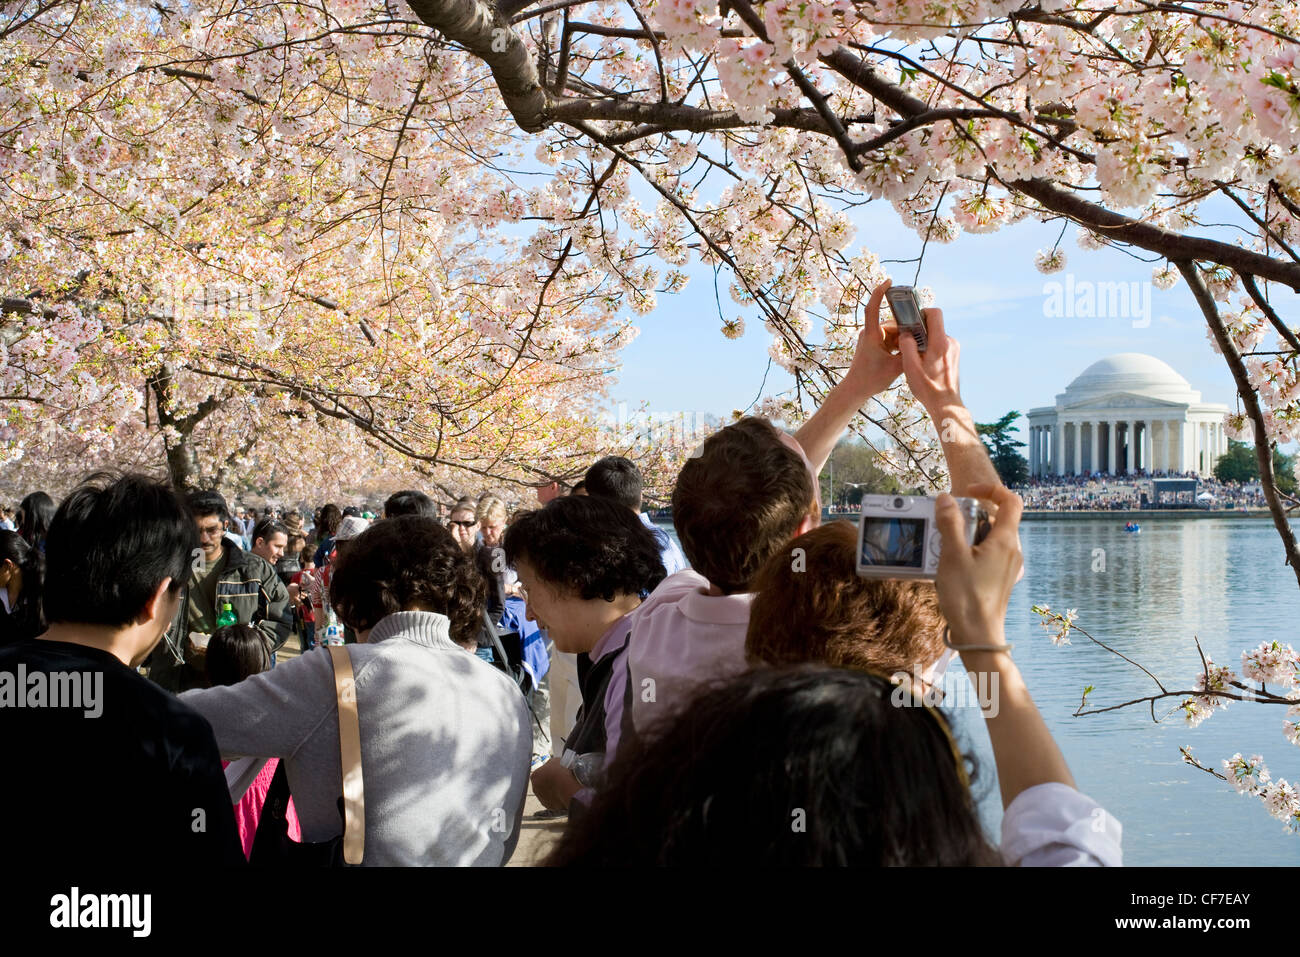 Besucher; Touristen fotografieren der Kirschbäume in voller Blüte Peak und dem Jefferson Memorial am Tidal Basin in Washington, D.C. Stockfoto